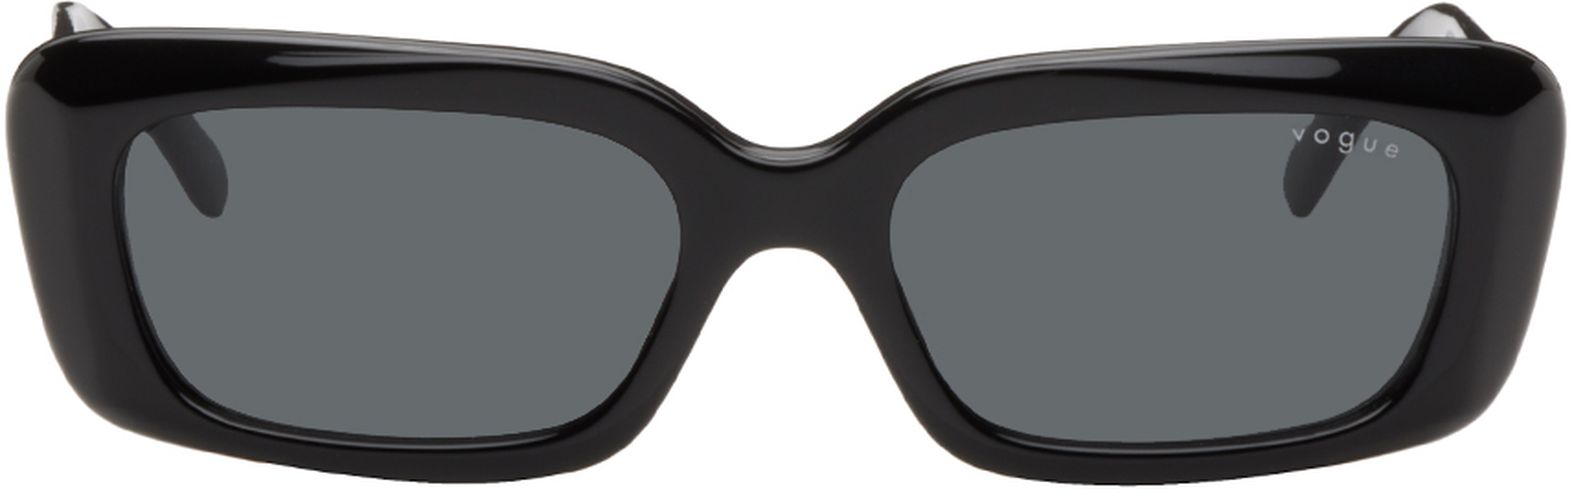 Lunettes de soleil rectangulaires noires édition Hailey Bieber - Vogue Eyewear - Modalova